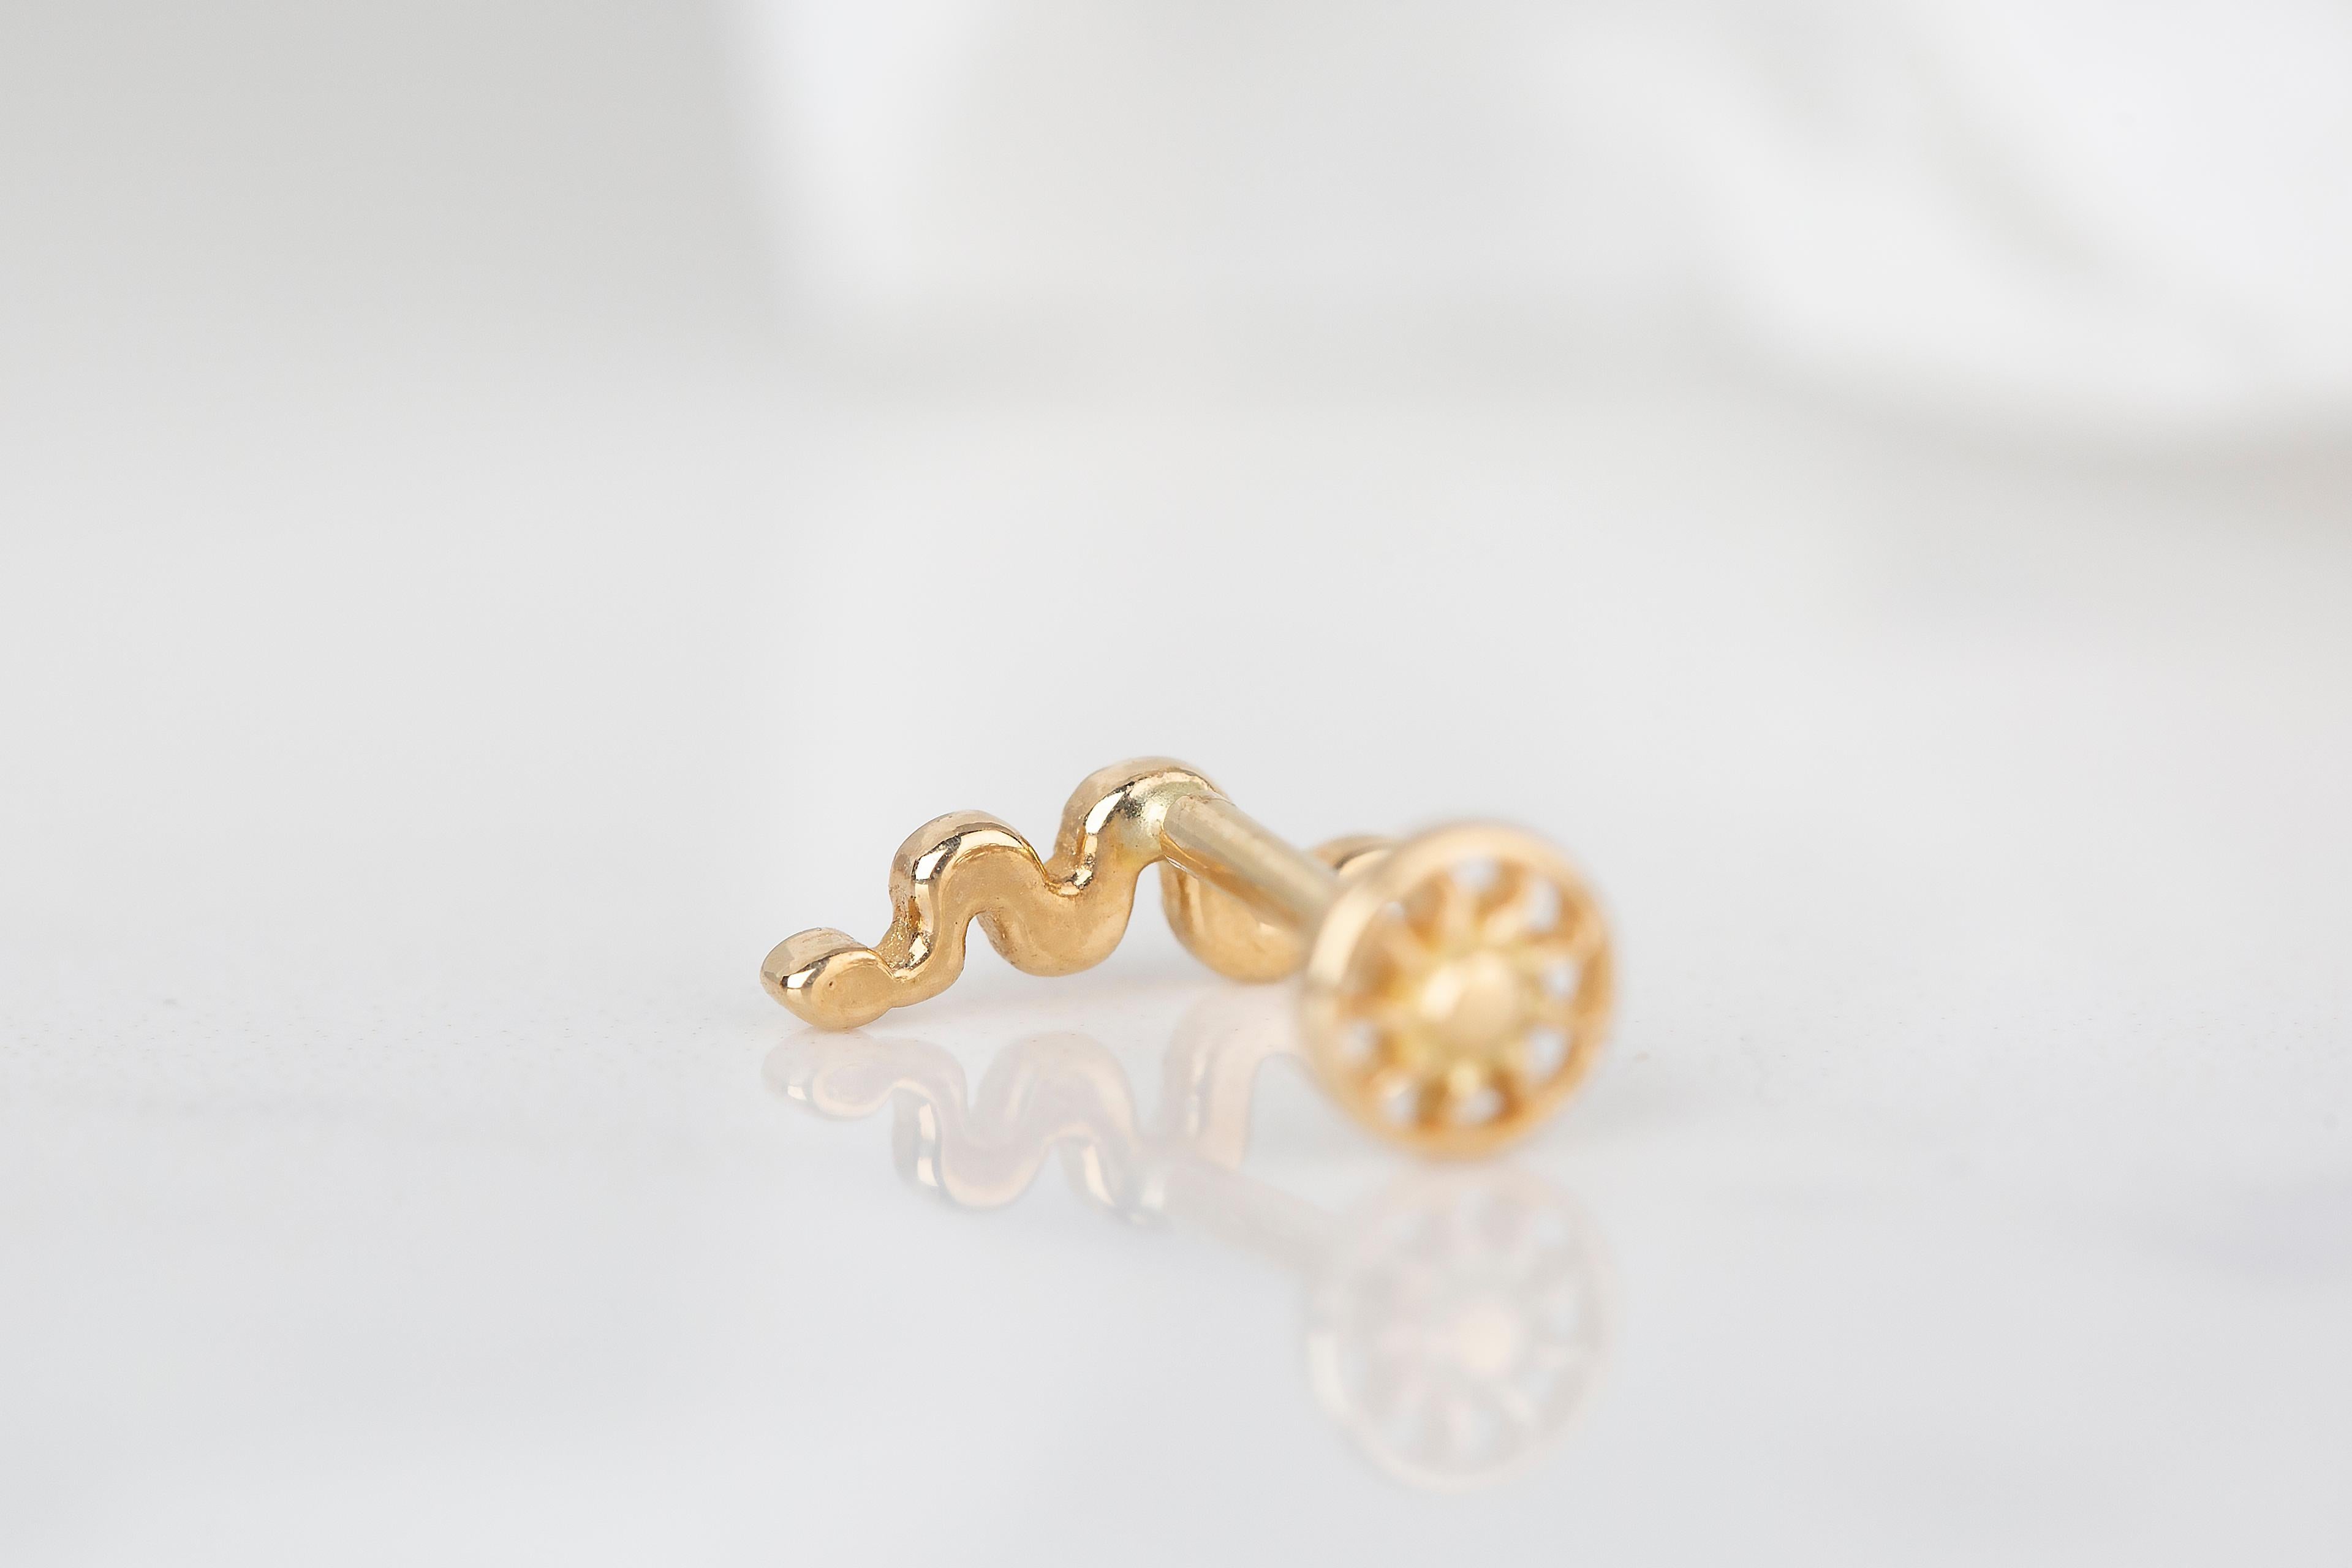 14k gold snake earrings